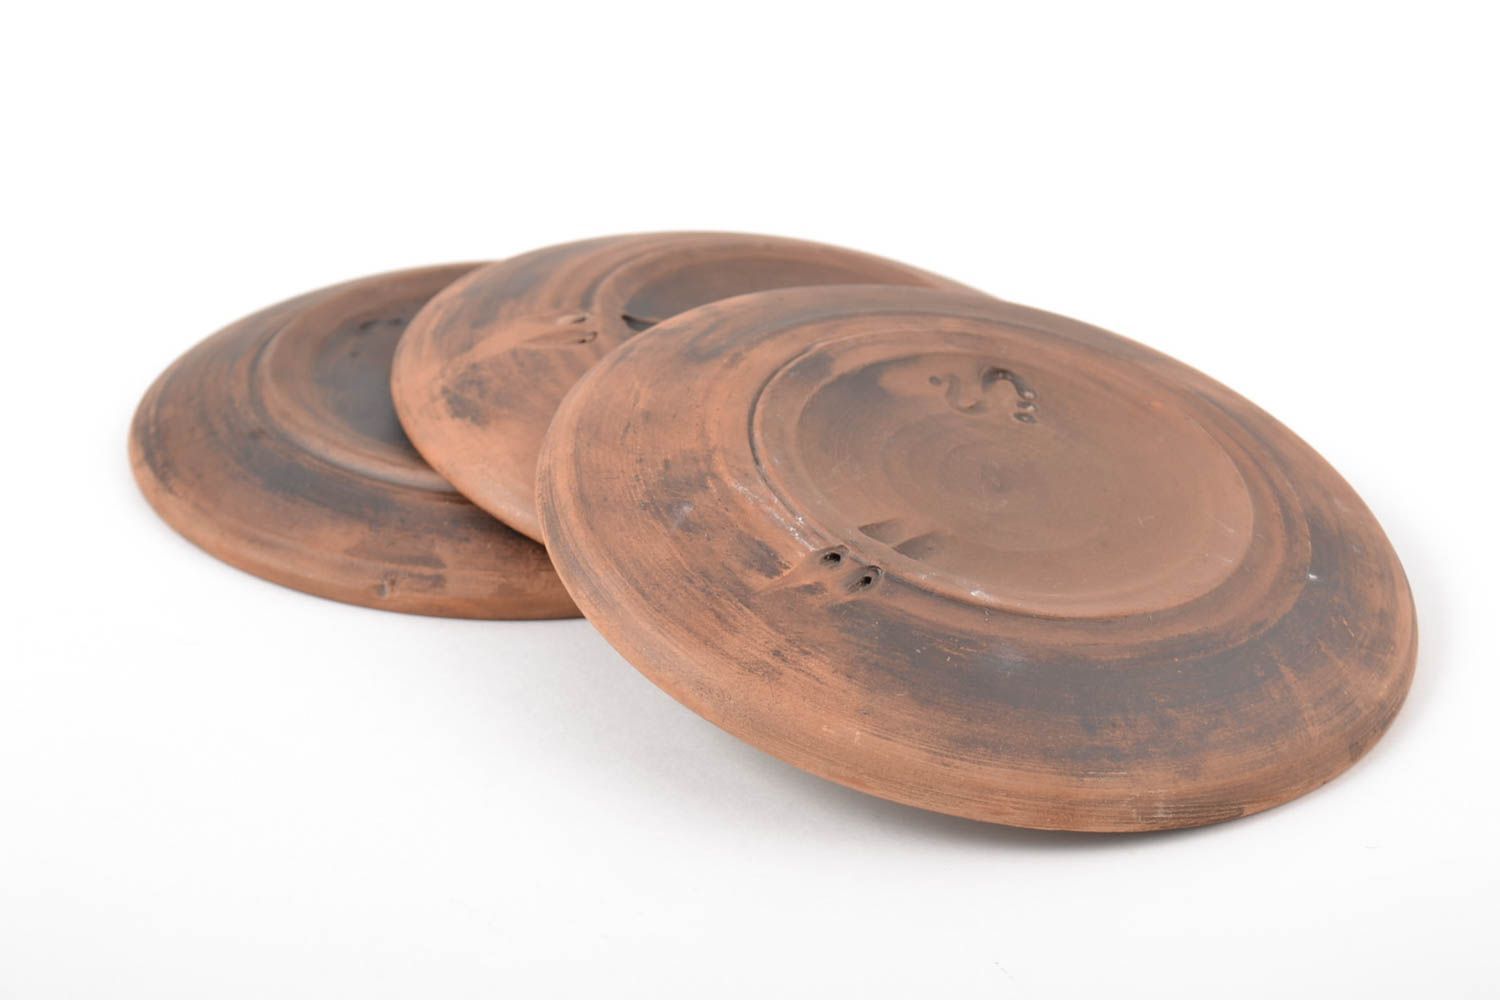 Handmade ceramic plate 3 pieces ceramic kitchenware kitchen supplies gift ideas photo 4